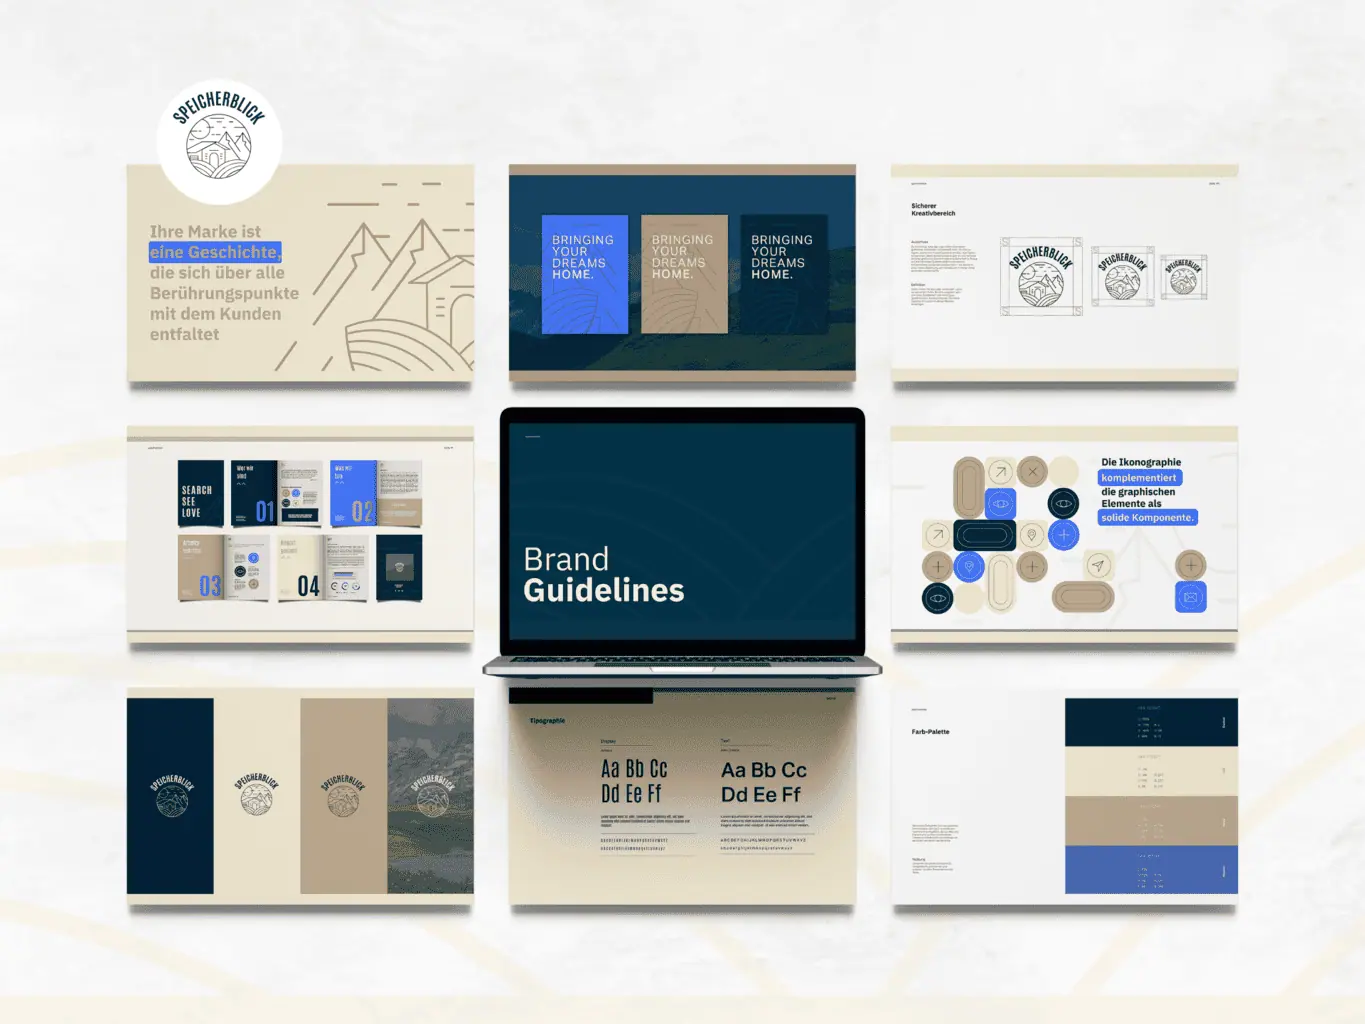 Präsentation der Corporate-Markenrichtlinien auf verschiedenen Materialien, darunter Büchern, Karten und einem Laptop, in einem Farbschema aus Blau und Gold nach einer Portfolio-Neugestaltung.